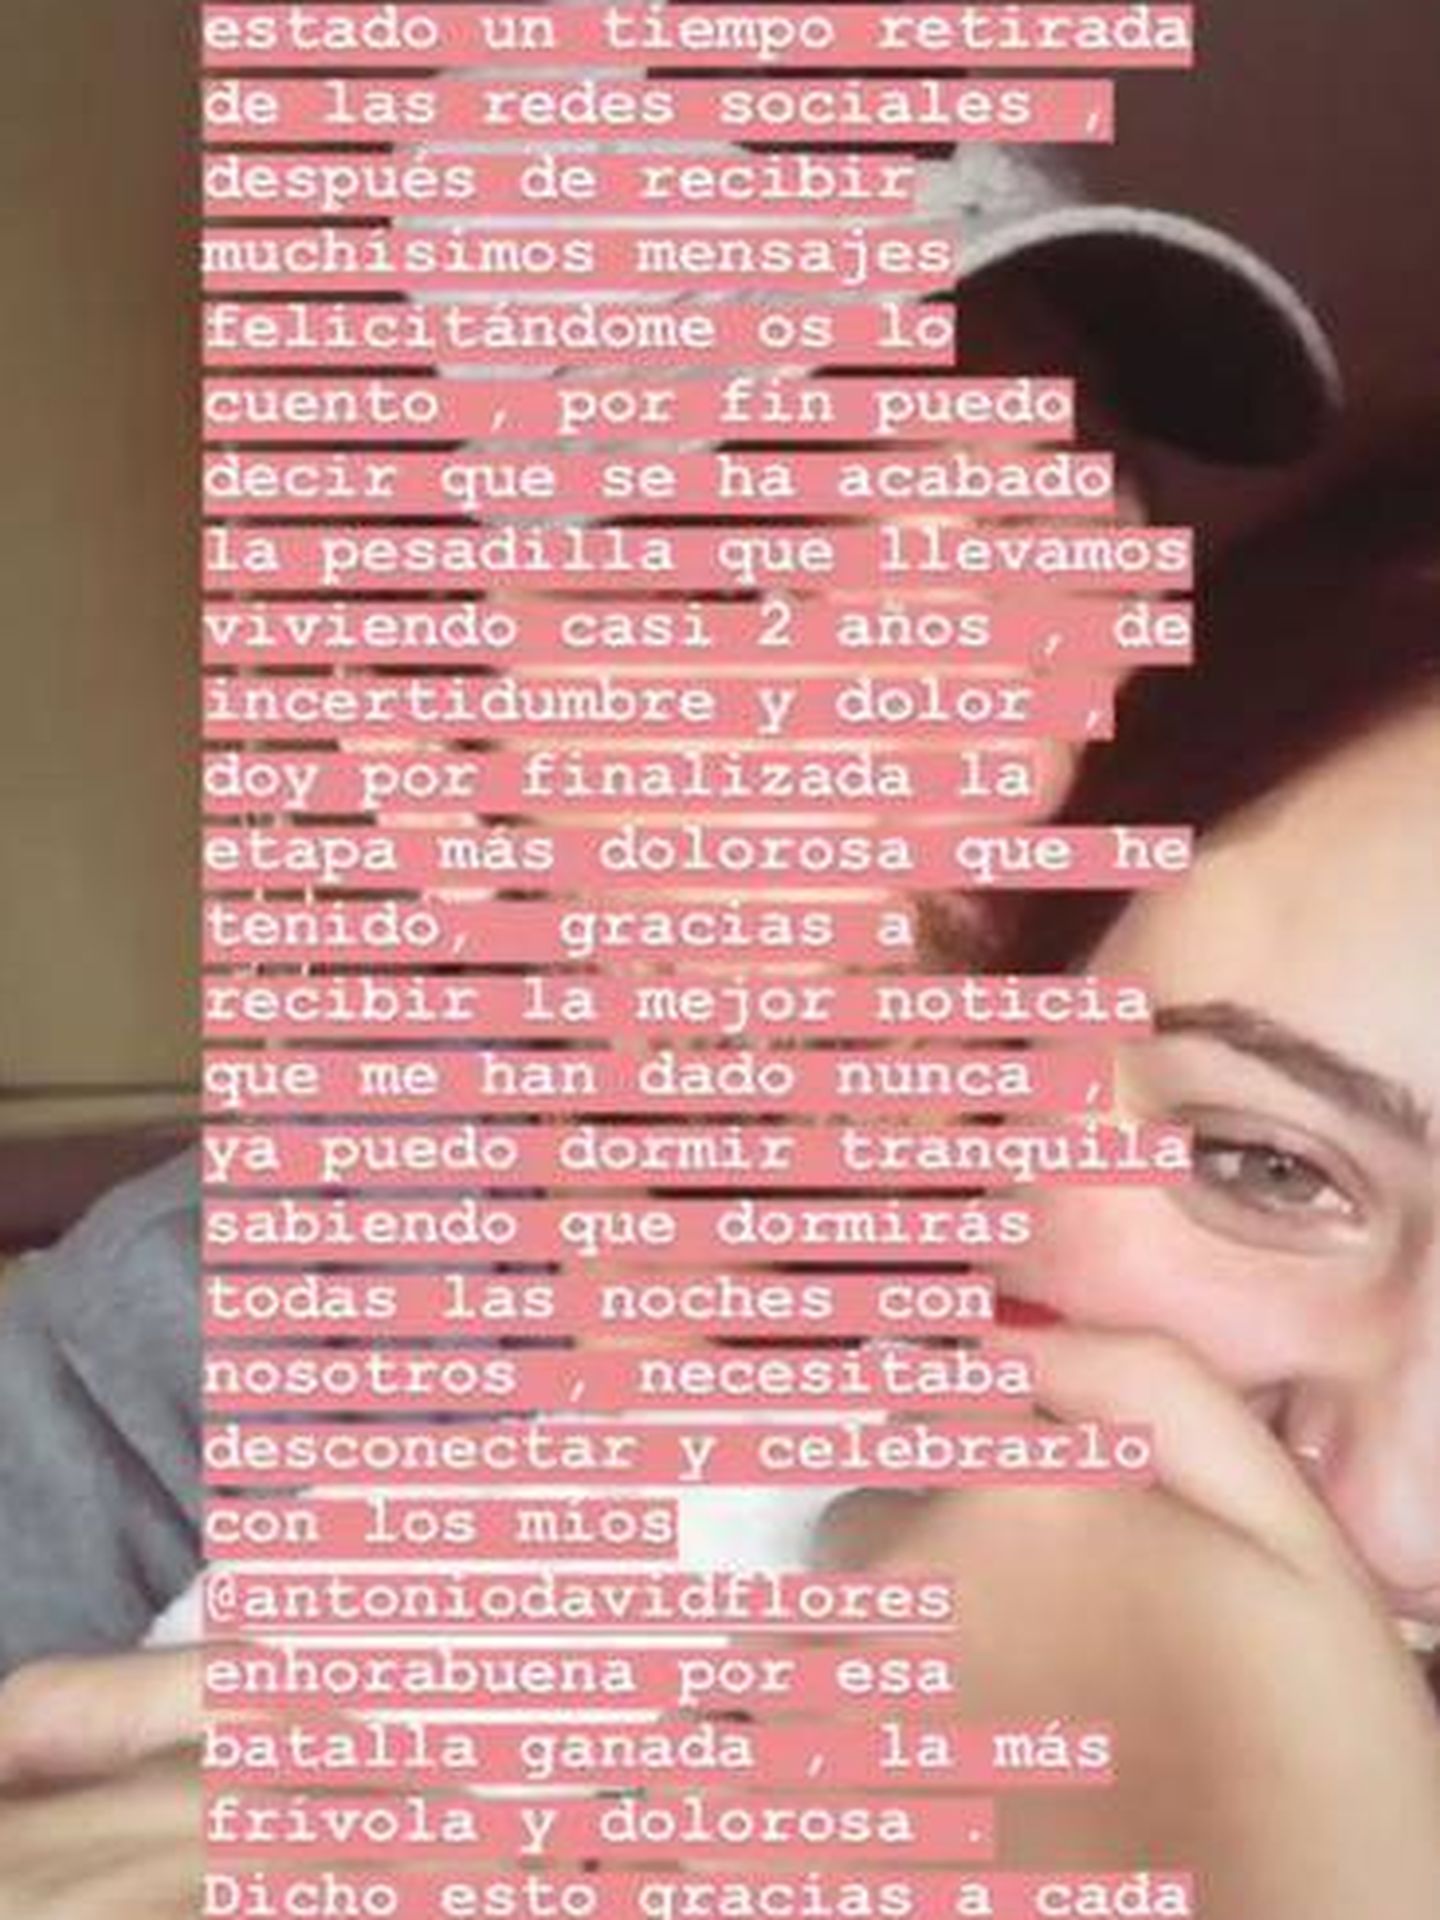 Mensaje completo de Rocío Flores. (Instagram)